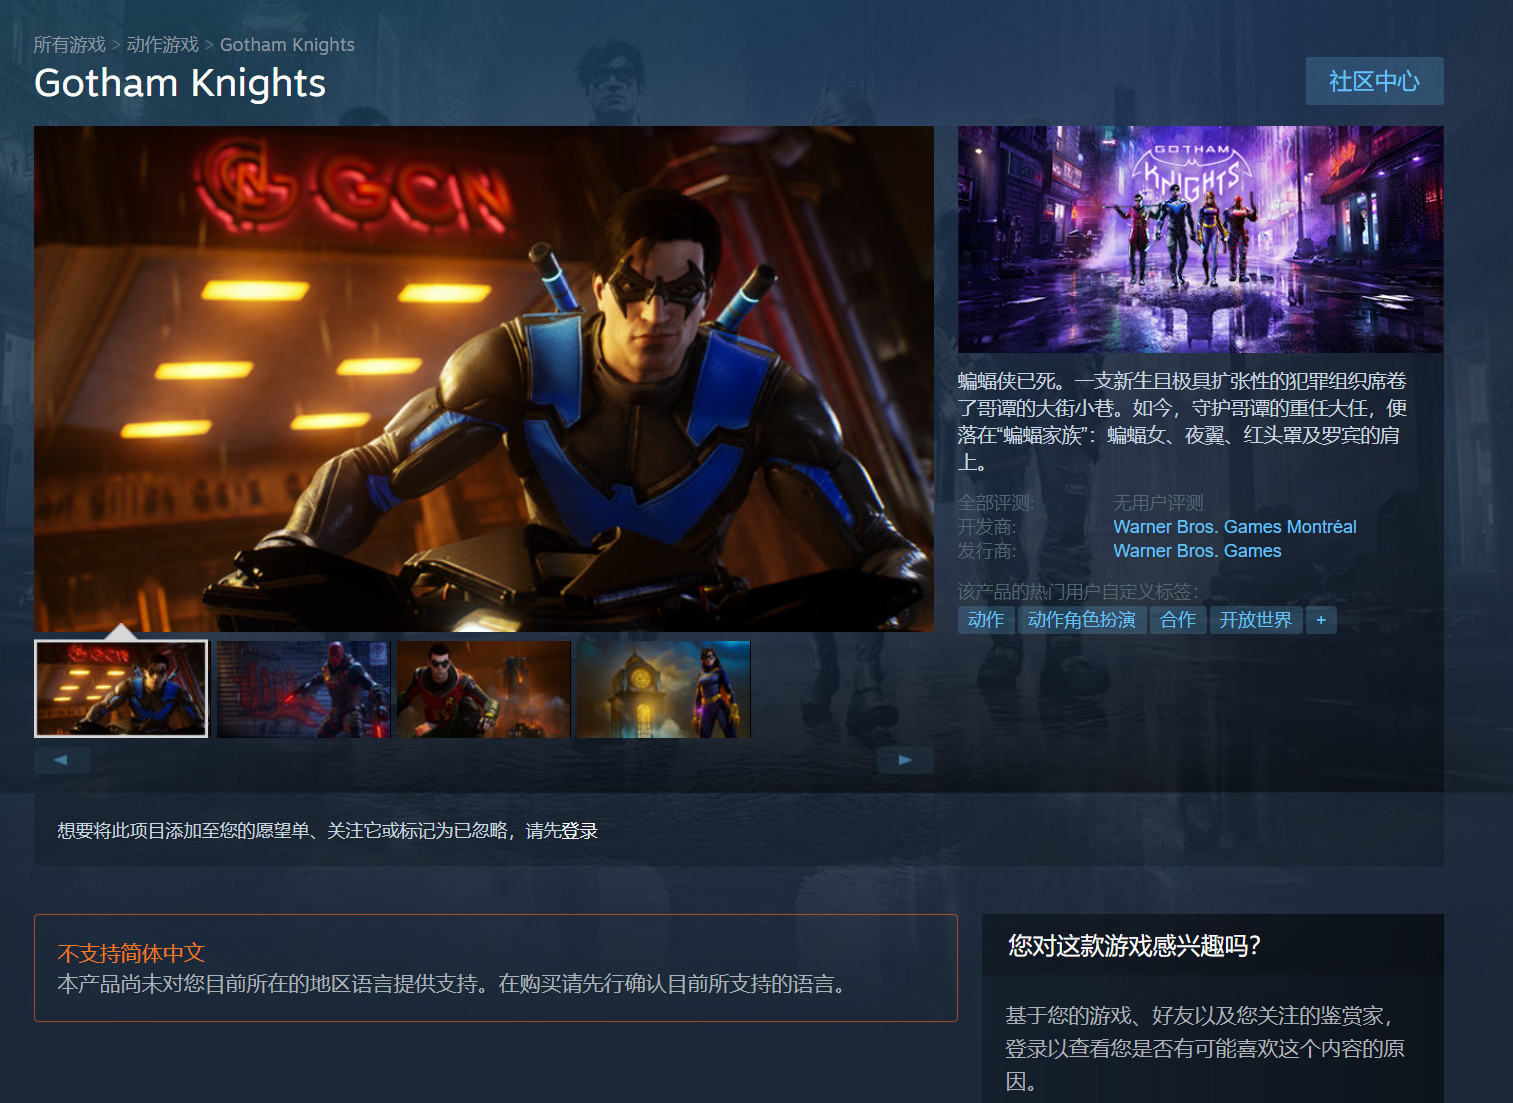 華納《哥譚騎士》Steam頁面上線 不支持中文